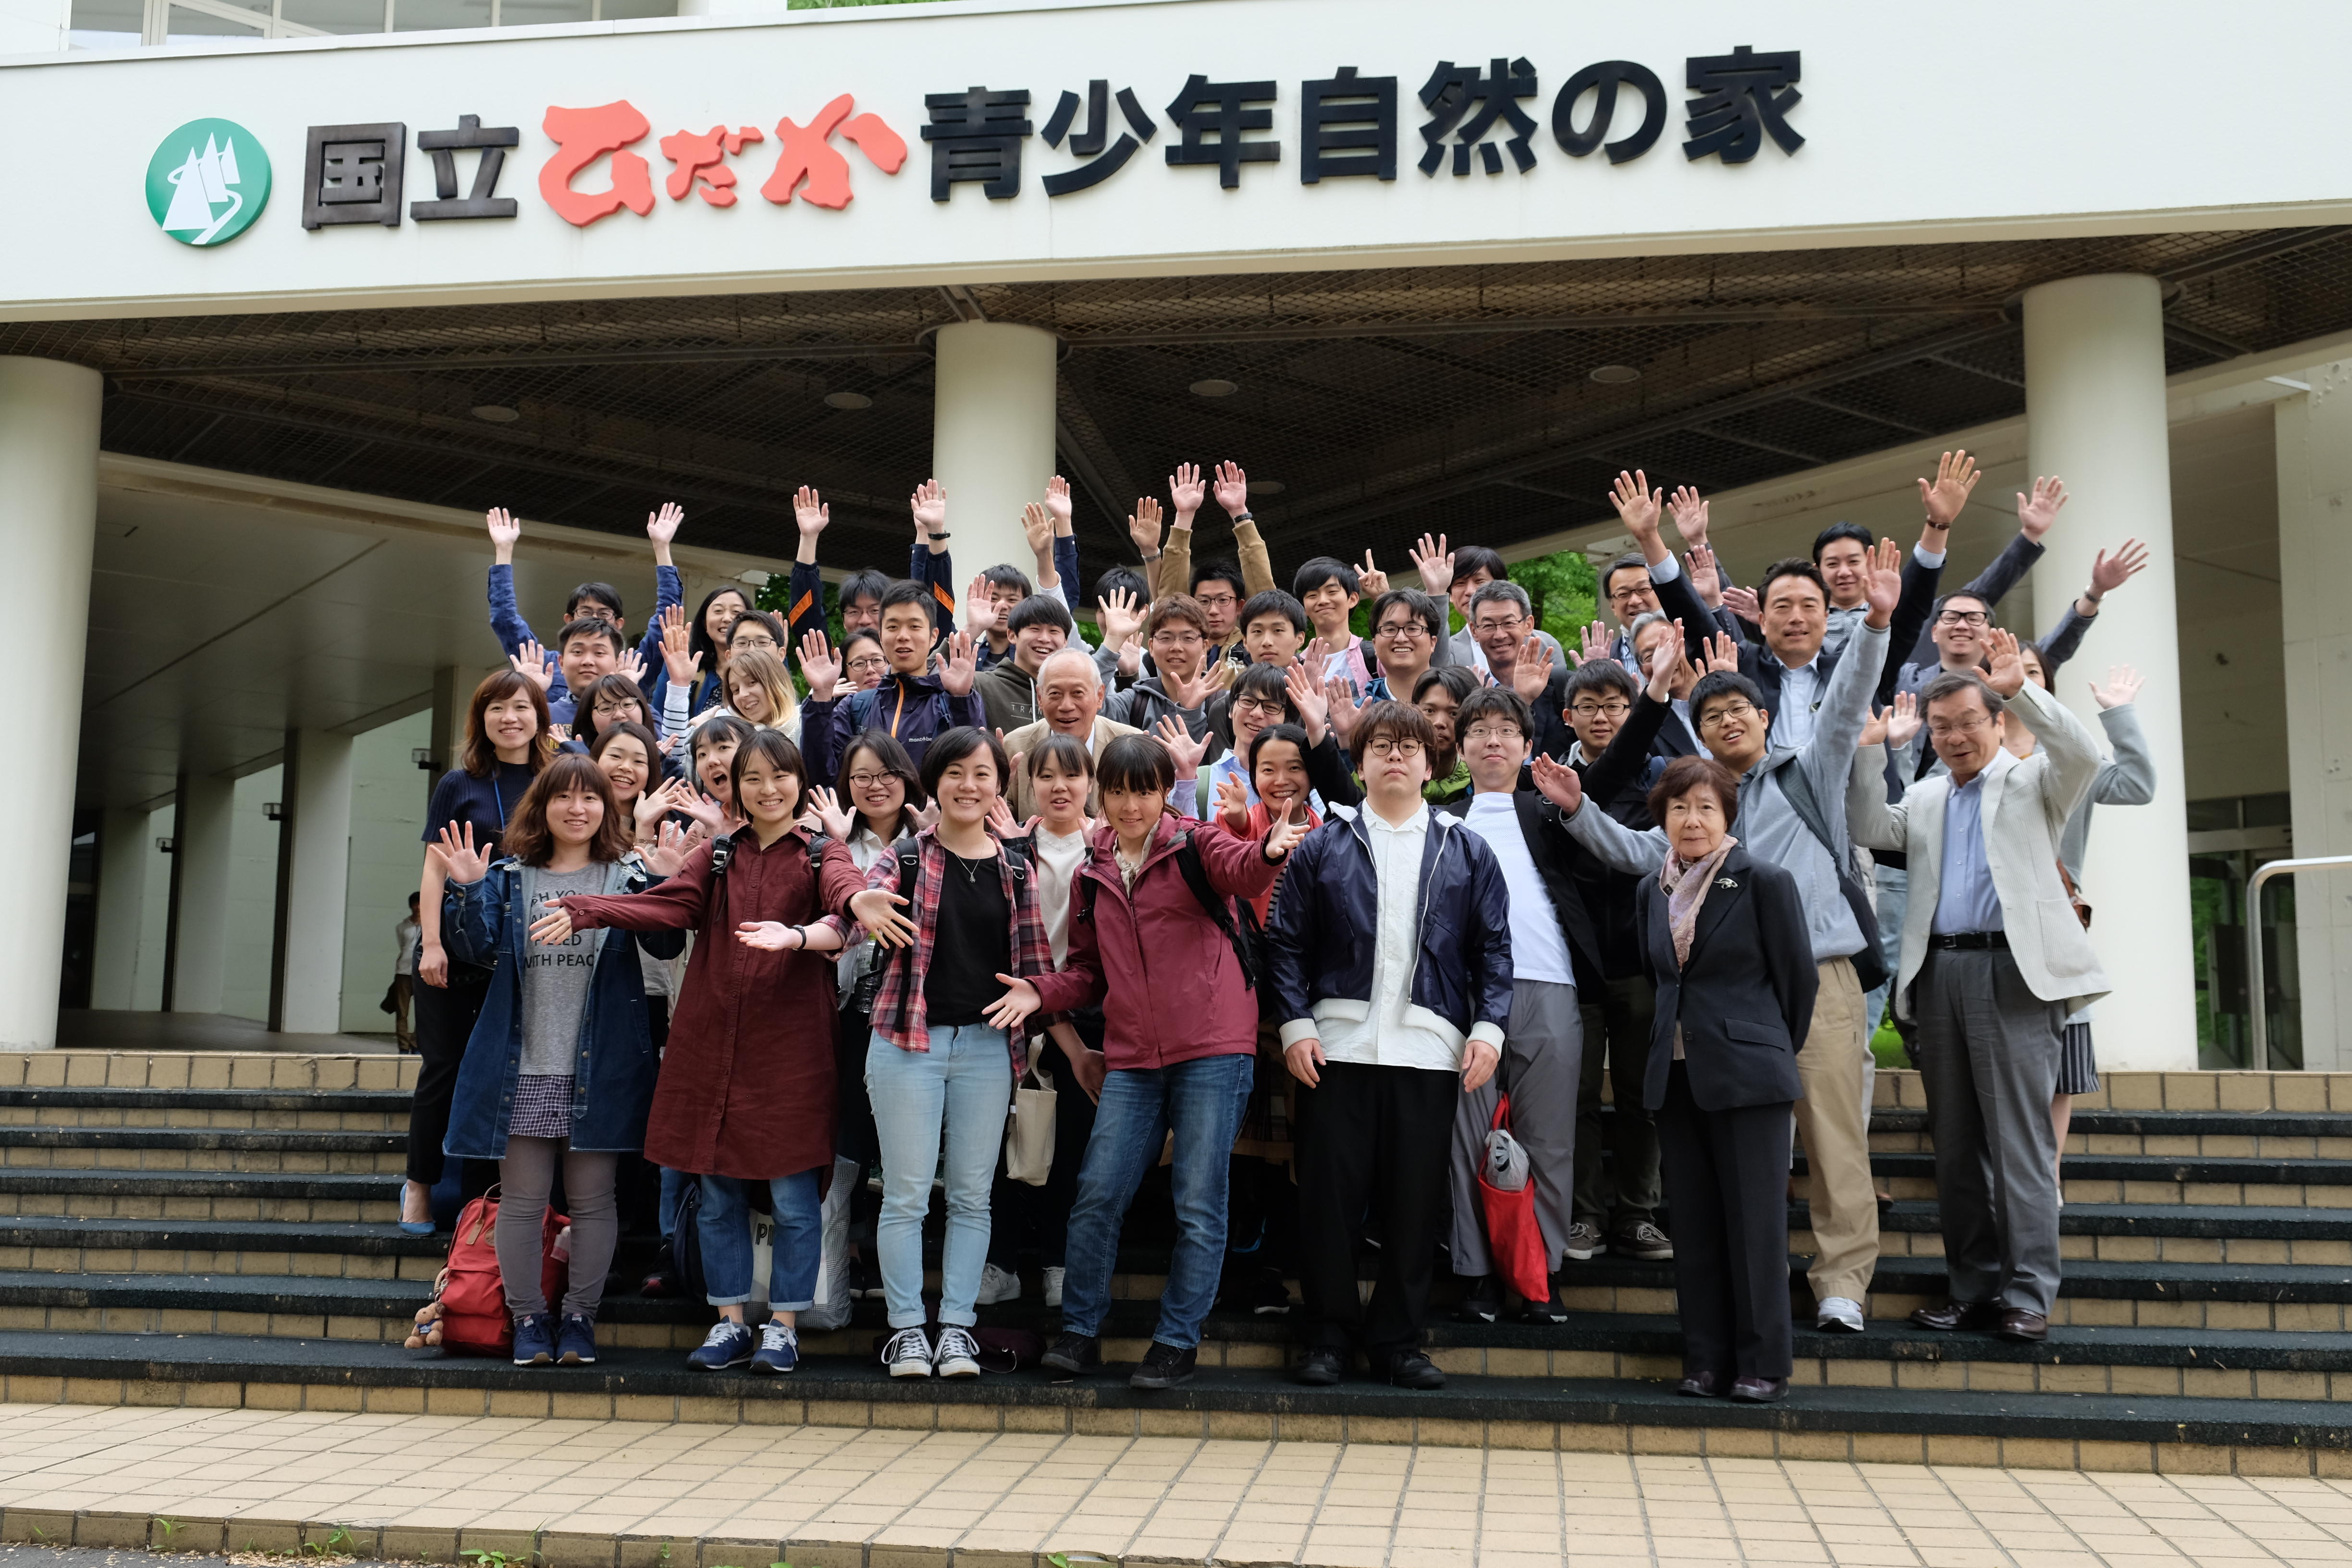 北海道大学が新渡戸稲造の名を冠する特別教育プログラム「新渡戸カレッジ」「新渡戸スクール」を展開 -- グローバル社会で活躍する人材を育成